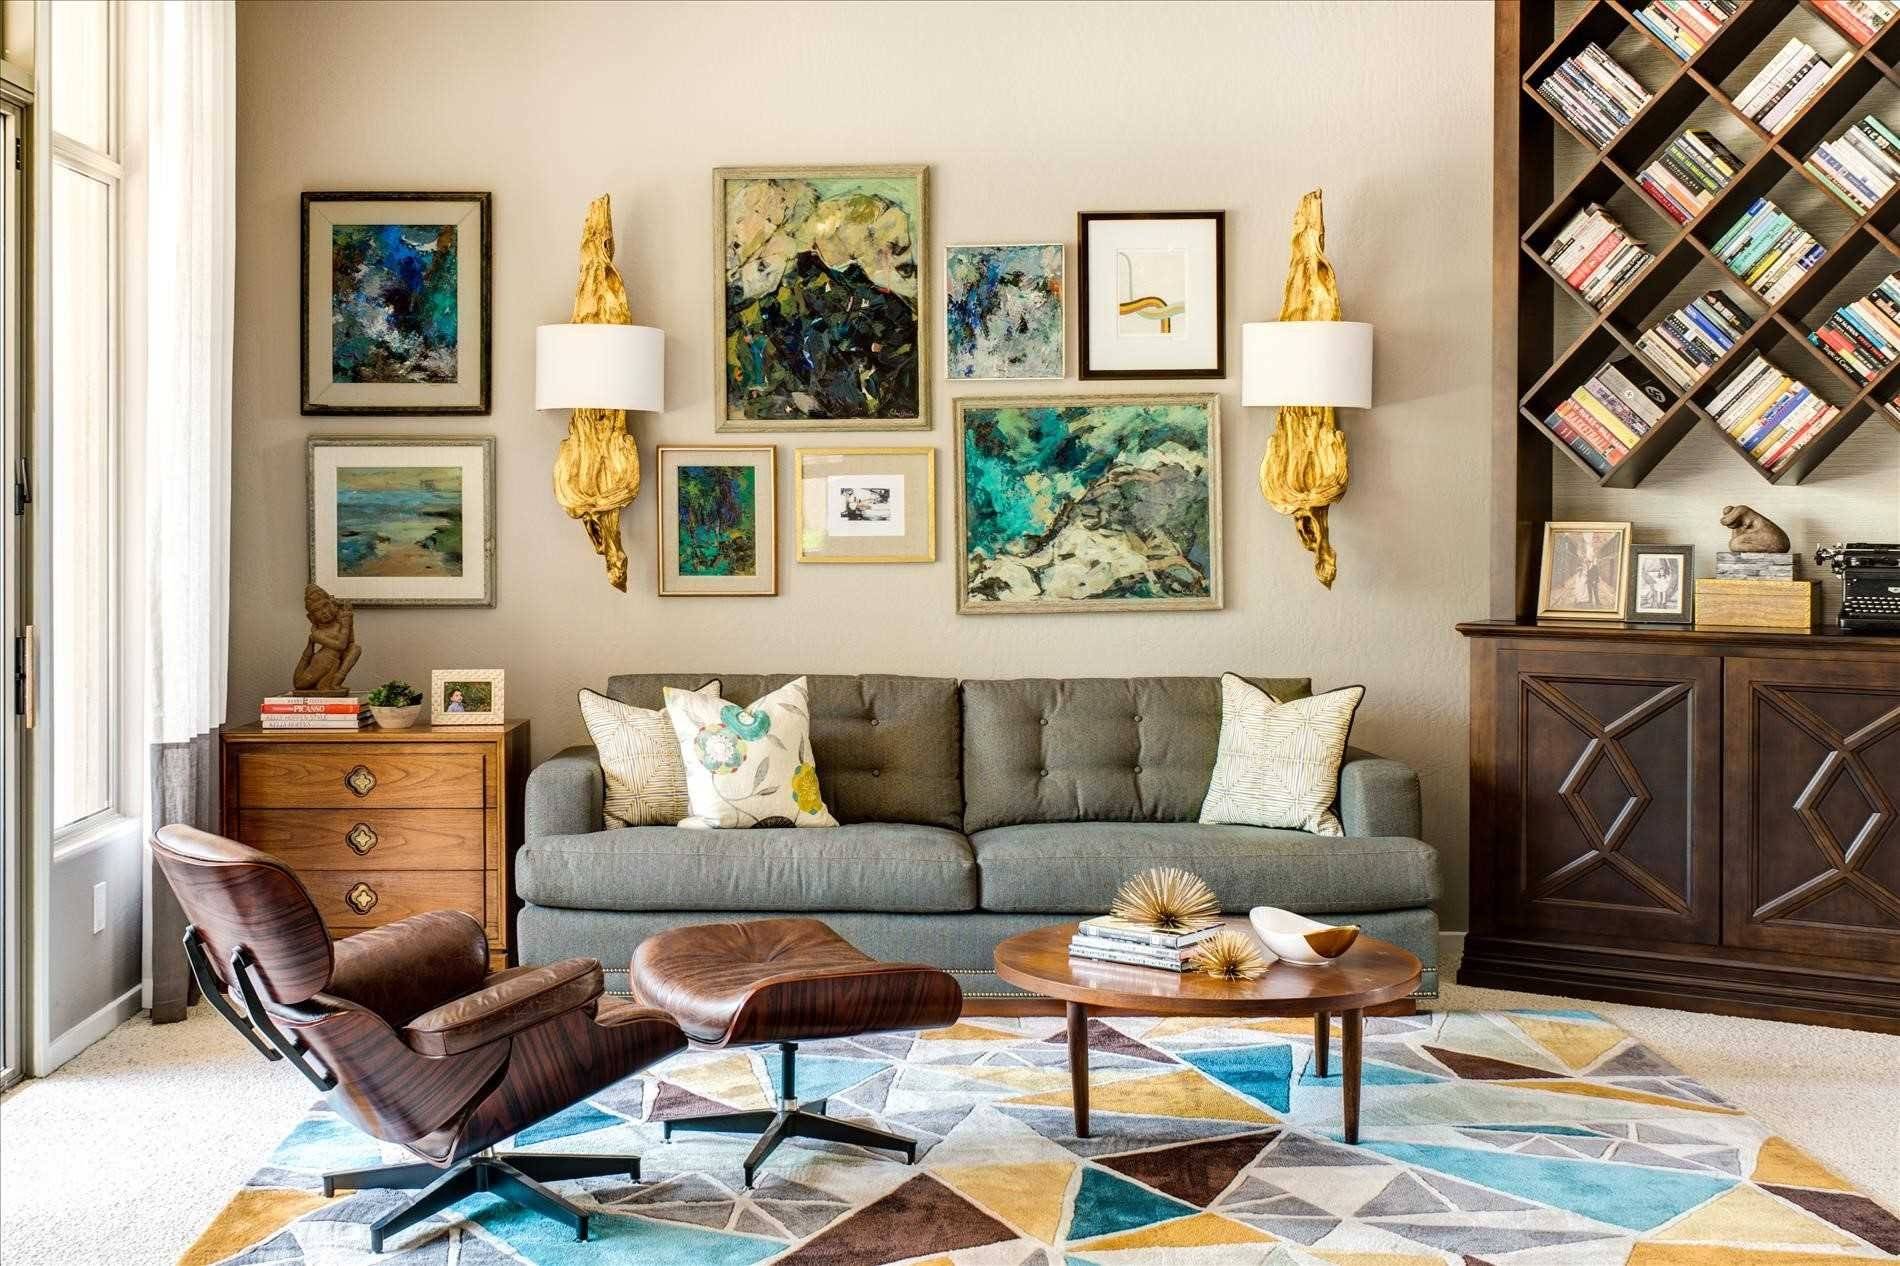 Модульные картины в интерьере гостиной над диваном — фото идей, варианты размещения